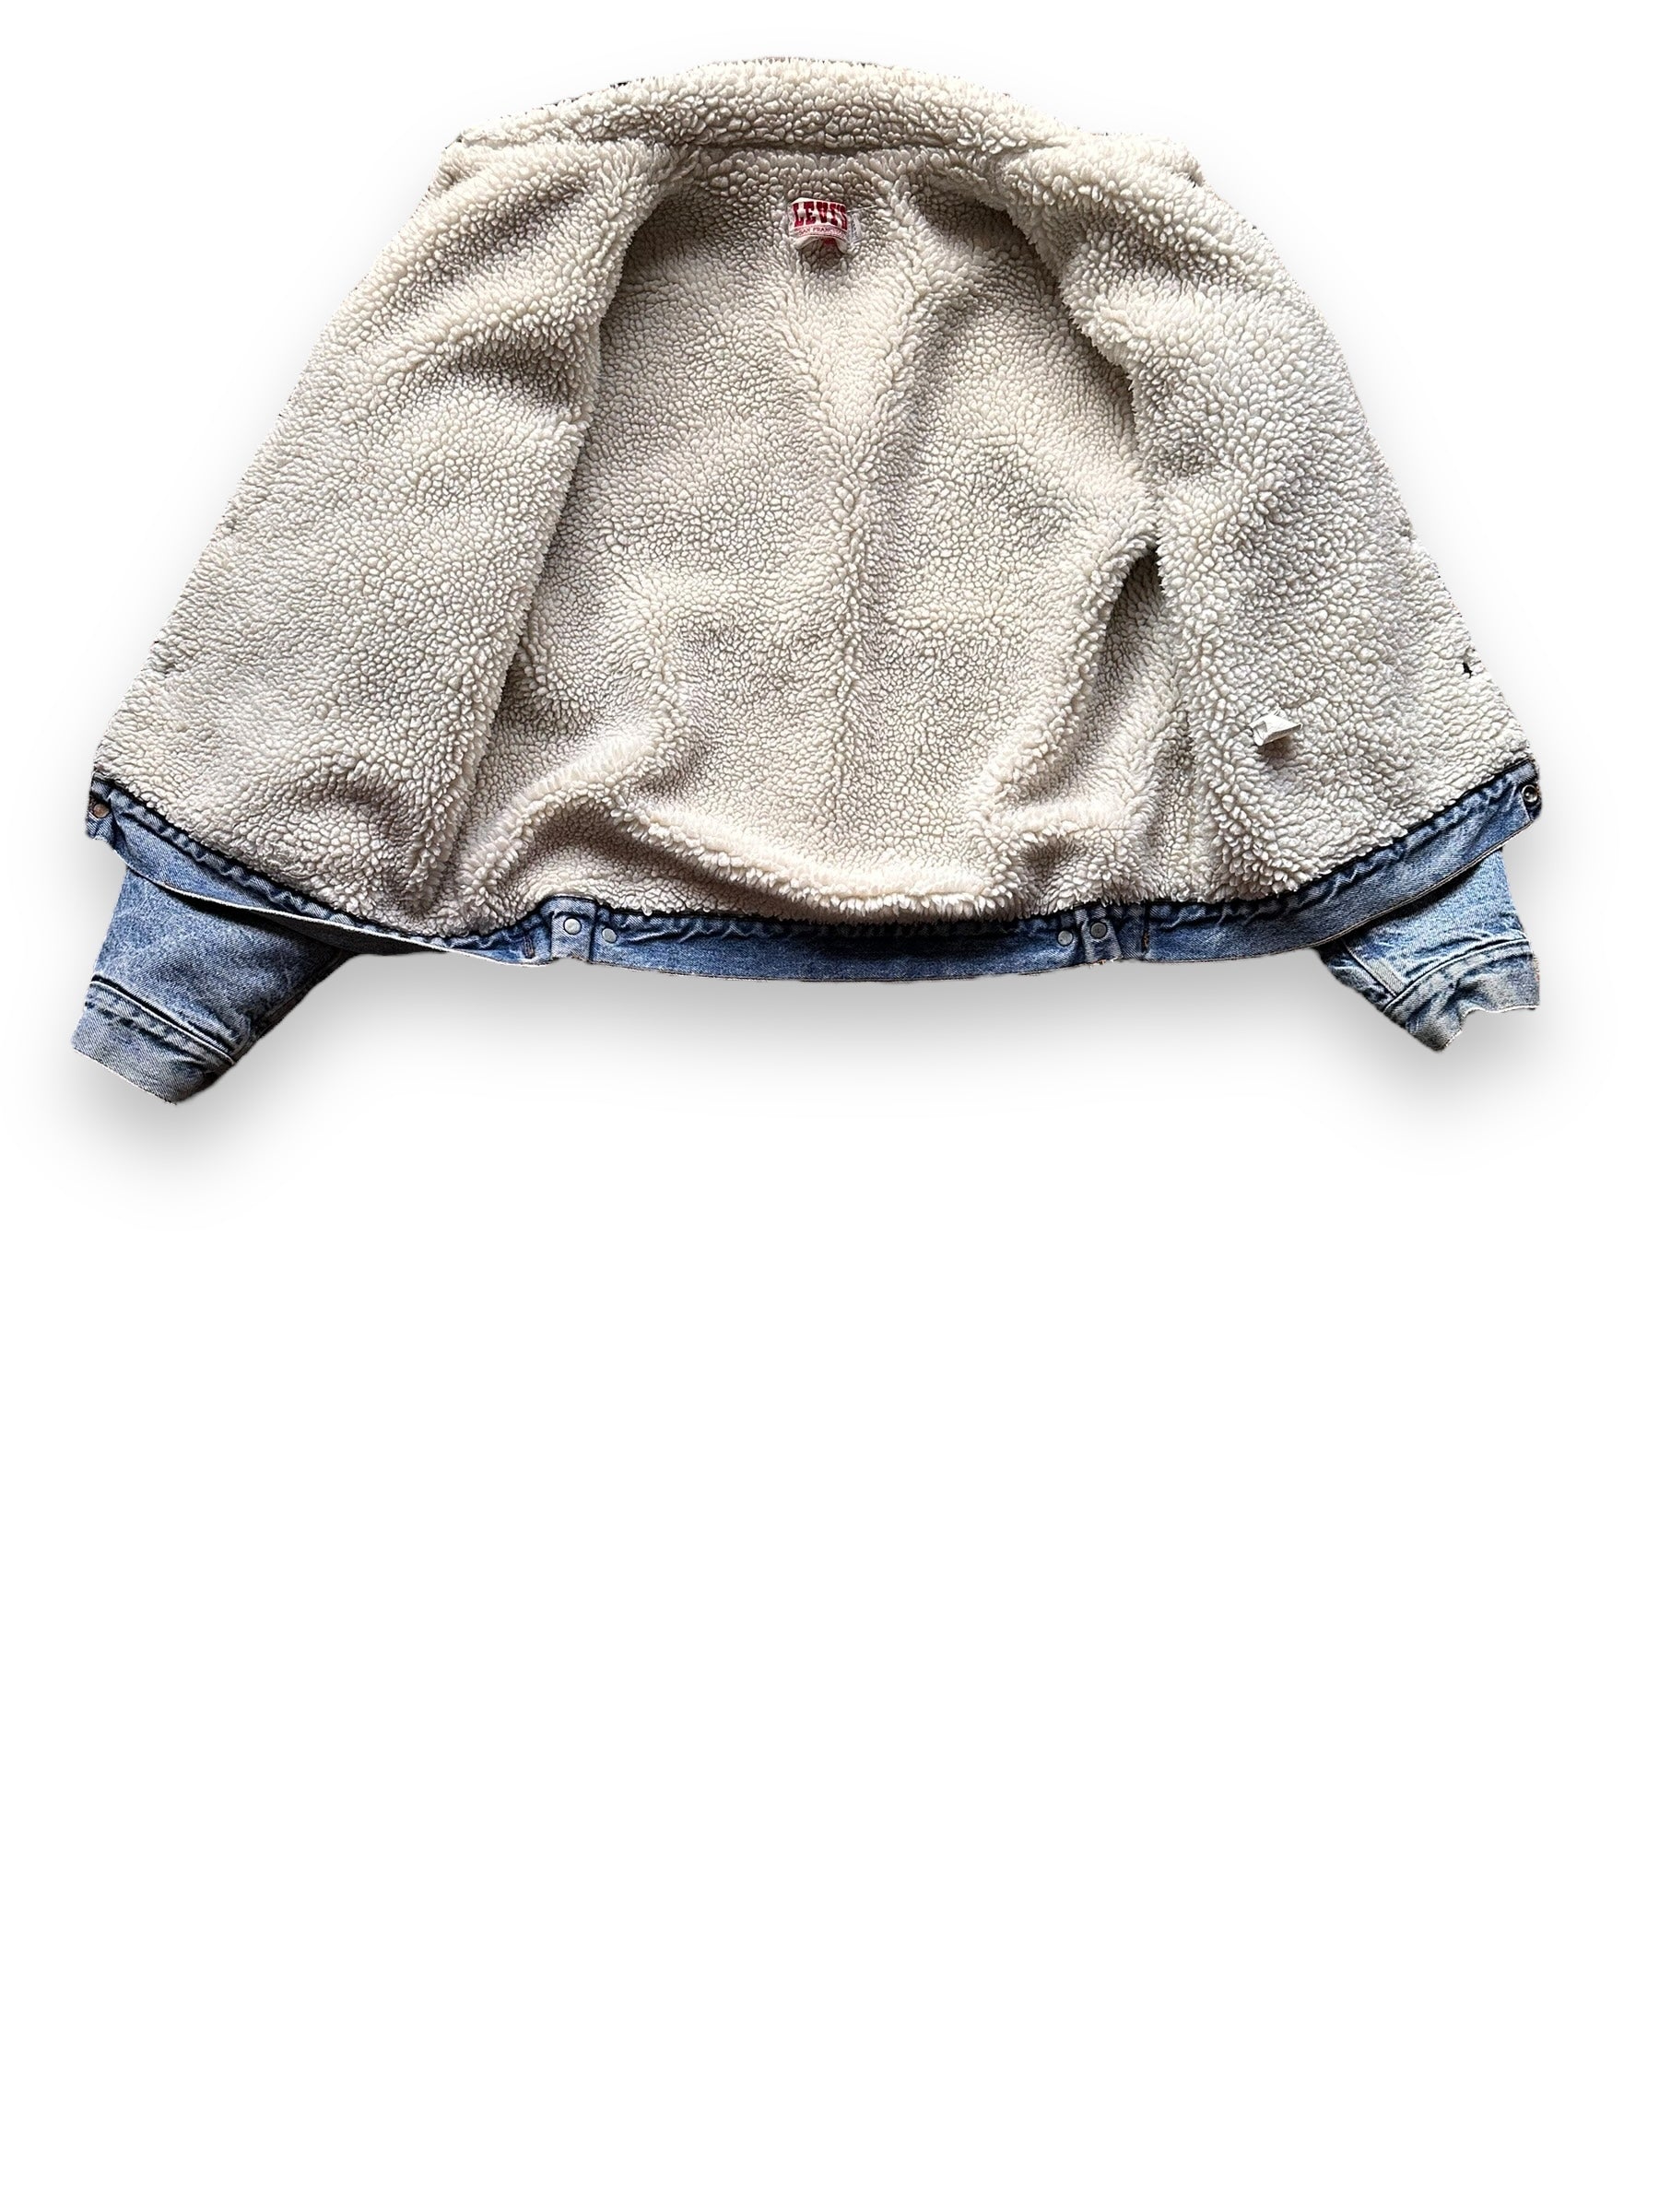 Shearling Lining of Vintage Levis Sherpa Type III Denim Jacket SZ 46R | Vintage Denim Workwear Seattle | Barn Owl Seattle